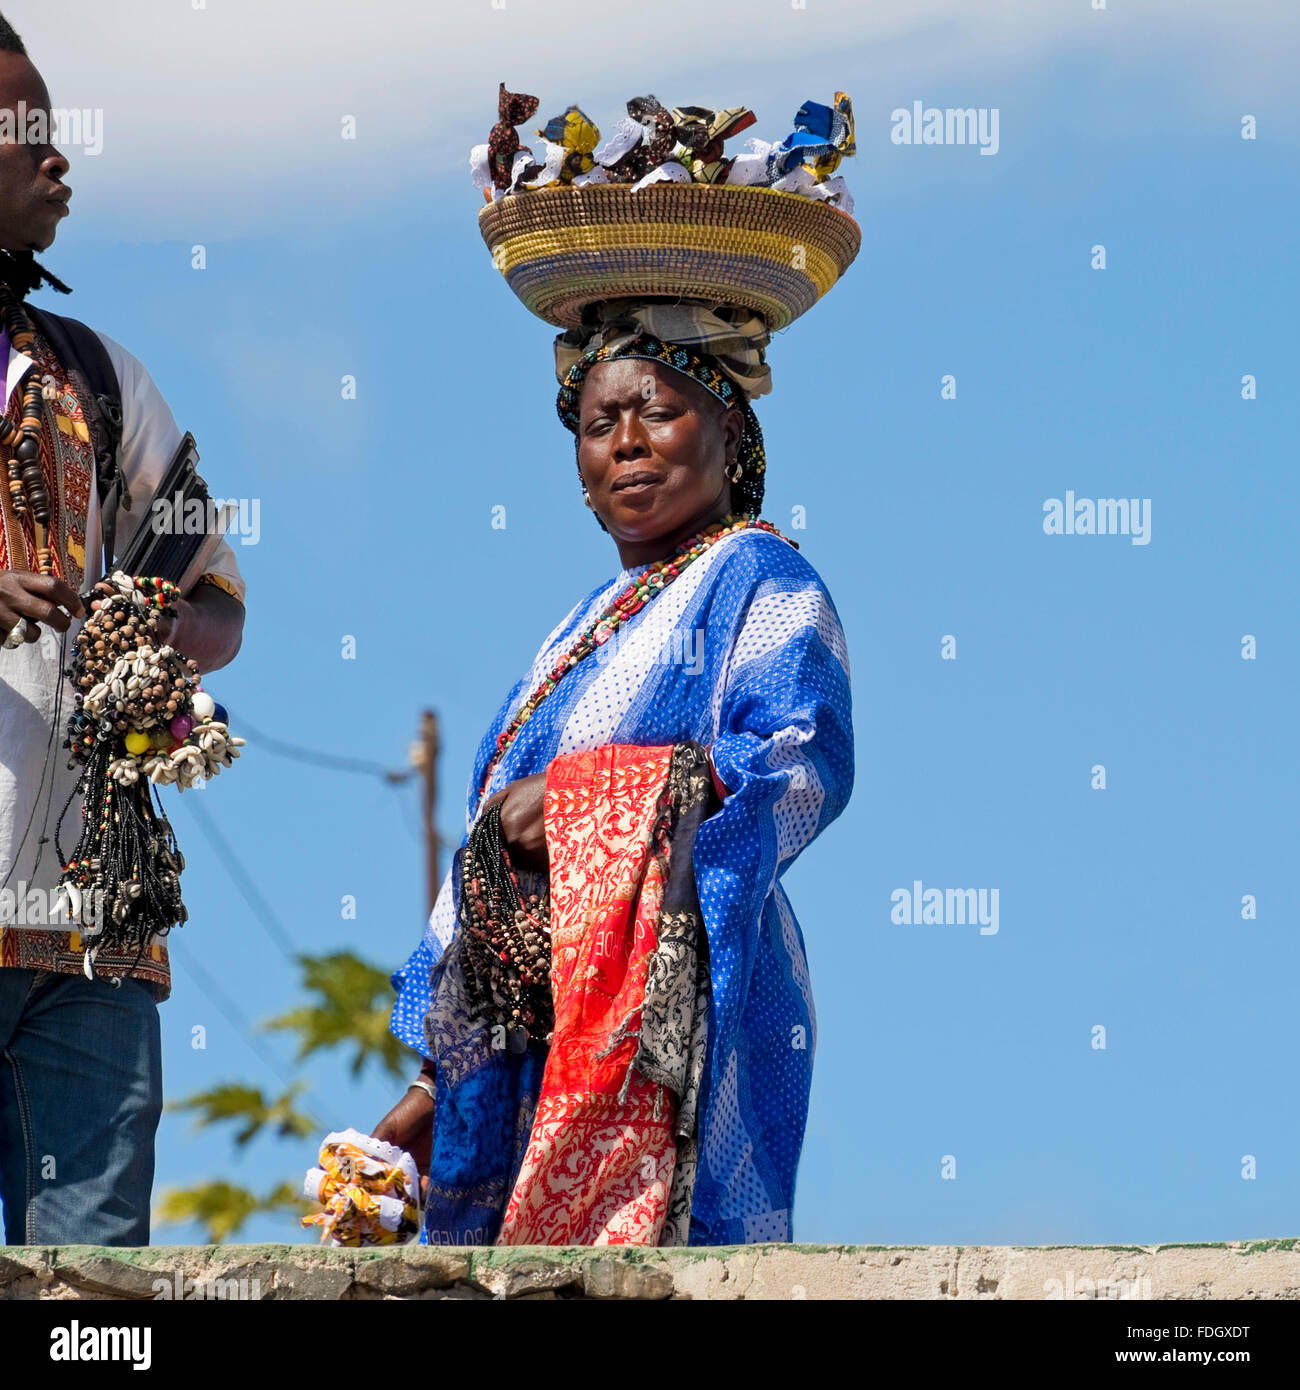 Quadratische Porträt einer lokalen kapverdischen Frau mit Souvenirs aus einem Korb auf dem Kopf auf den Kapverden ausgeglichen. Stockfoto